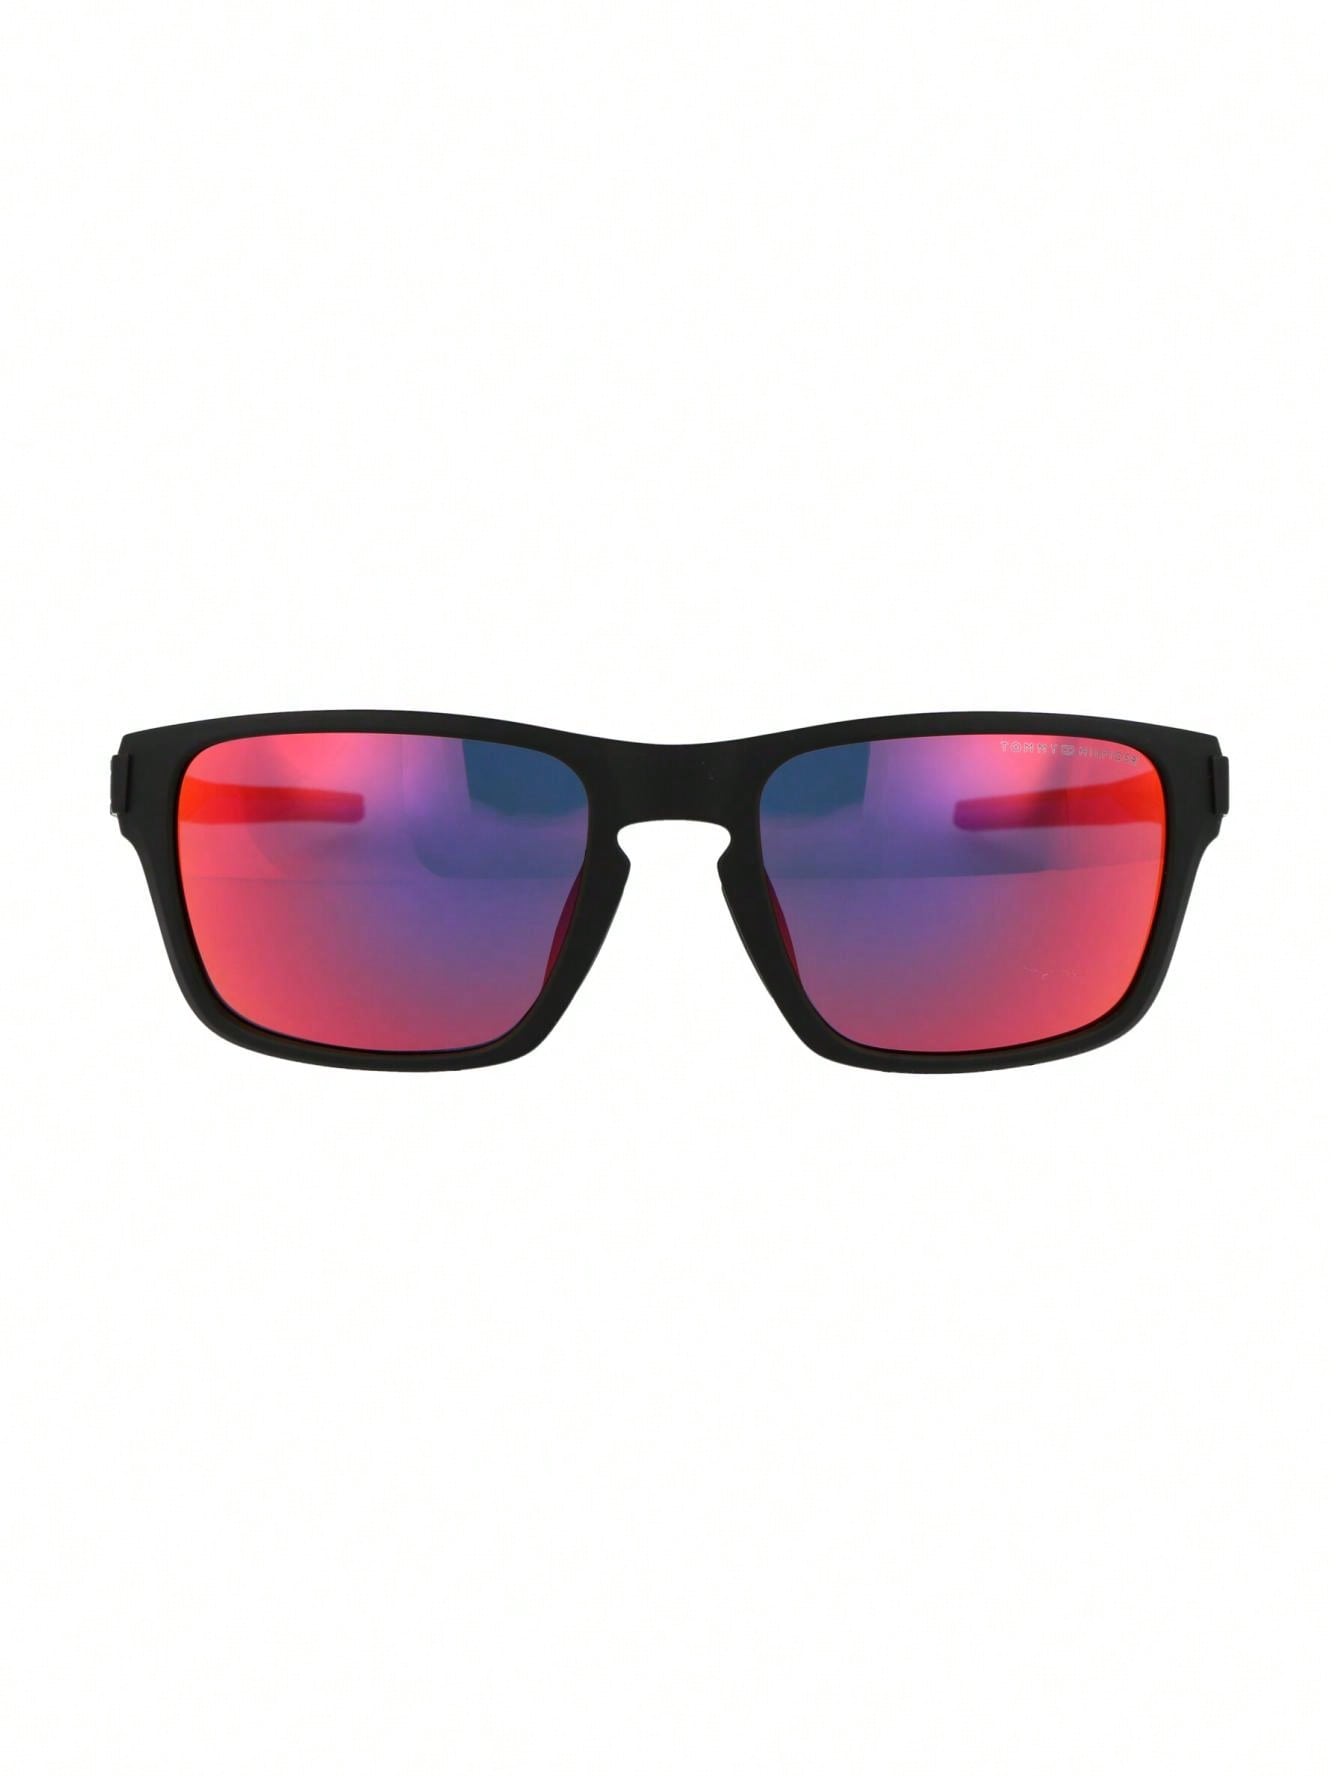 Мужские солнцезащитные очки Tommy Hilfiger DECOR TH1952S0VKPL, многоцветный